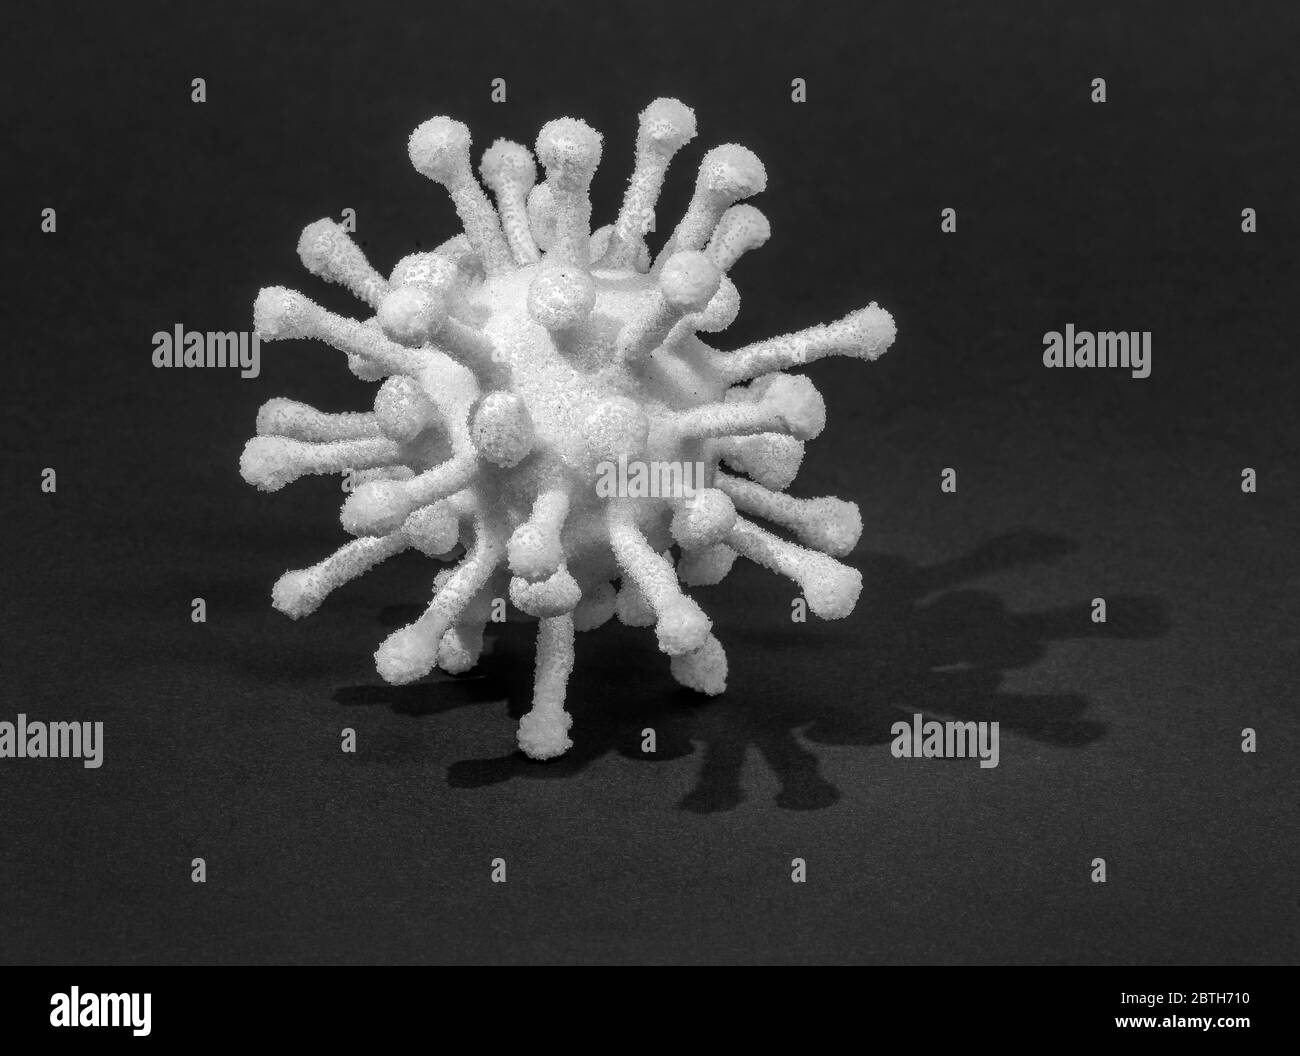 immagine di un virus simbolico in nero Foto Stock